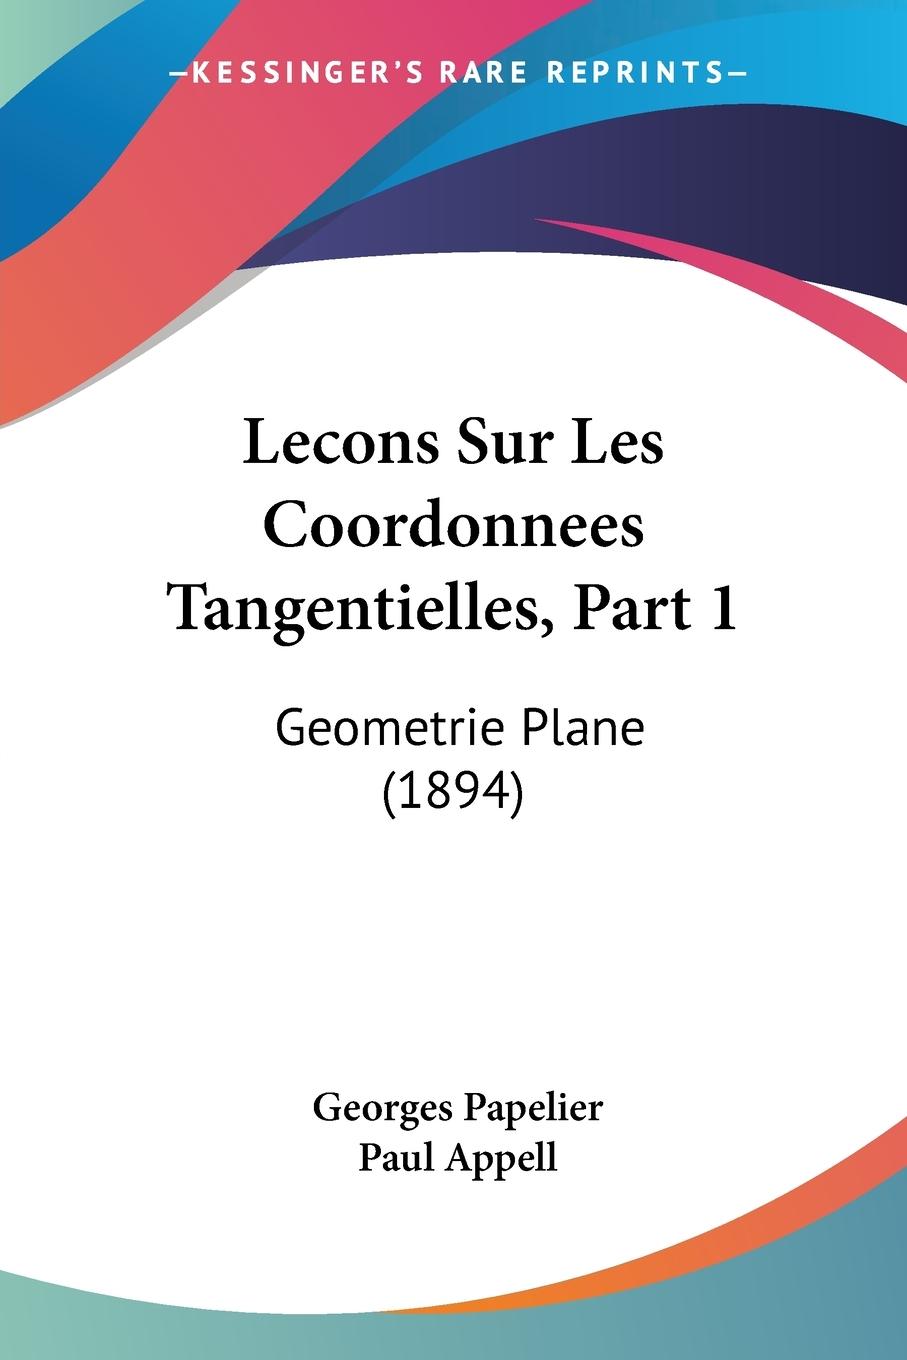 Lecons Sur Les Coordonnees Tangentielles, Part 1 - Papelier, Georges